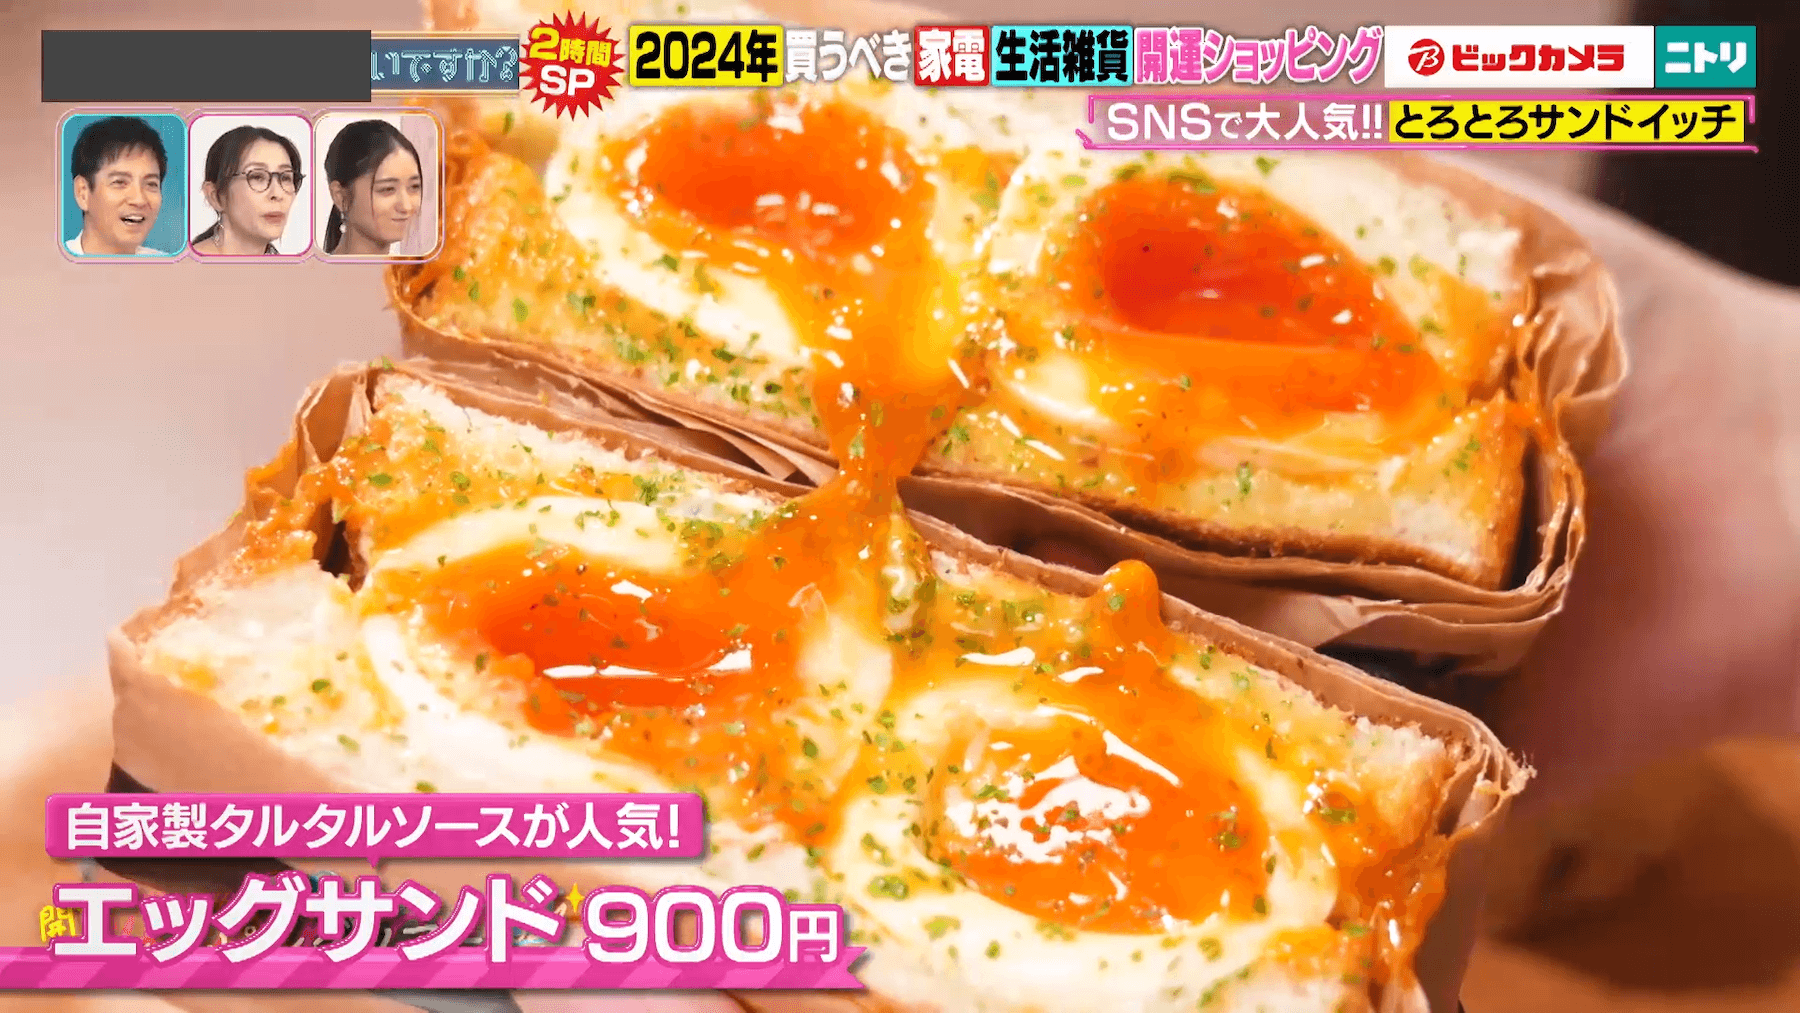 「STABLER Shimokitazawa Meatstand 2nd」の「エッグサンド」（900円）『突然ですが占ってもいいですか？』